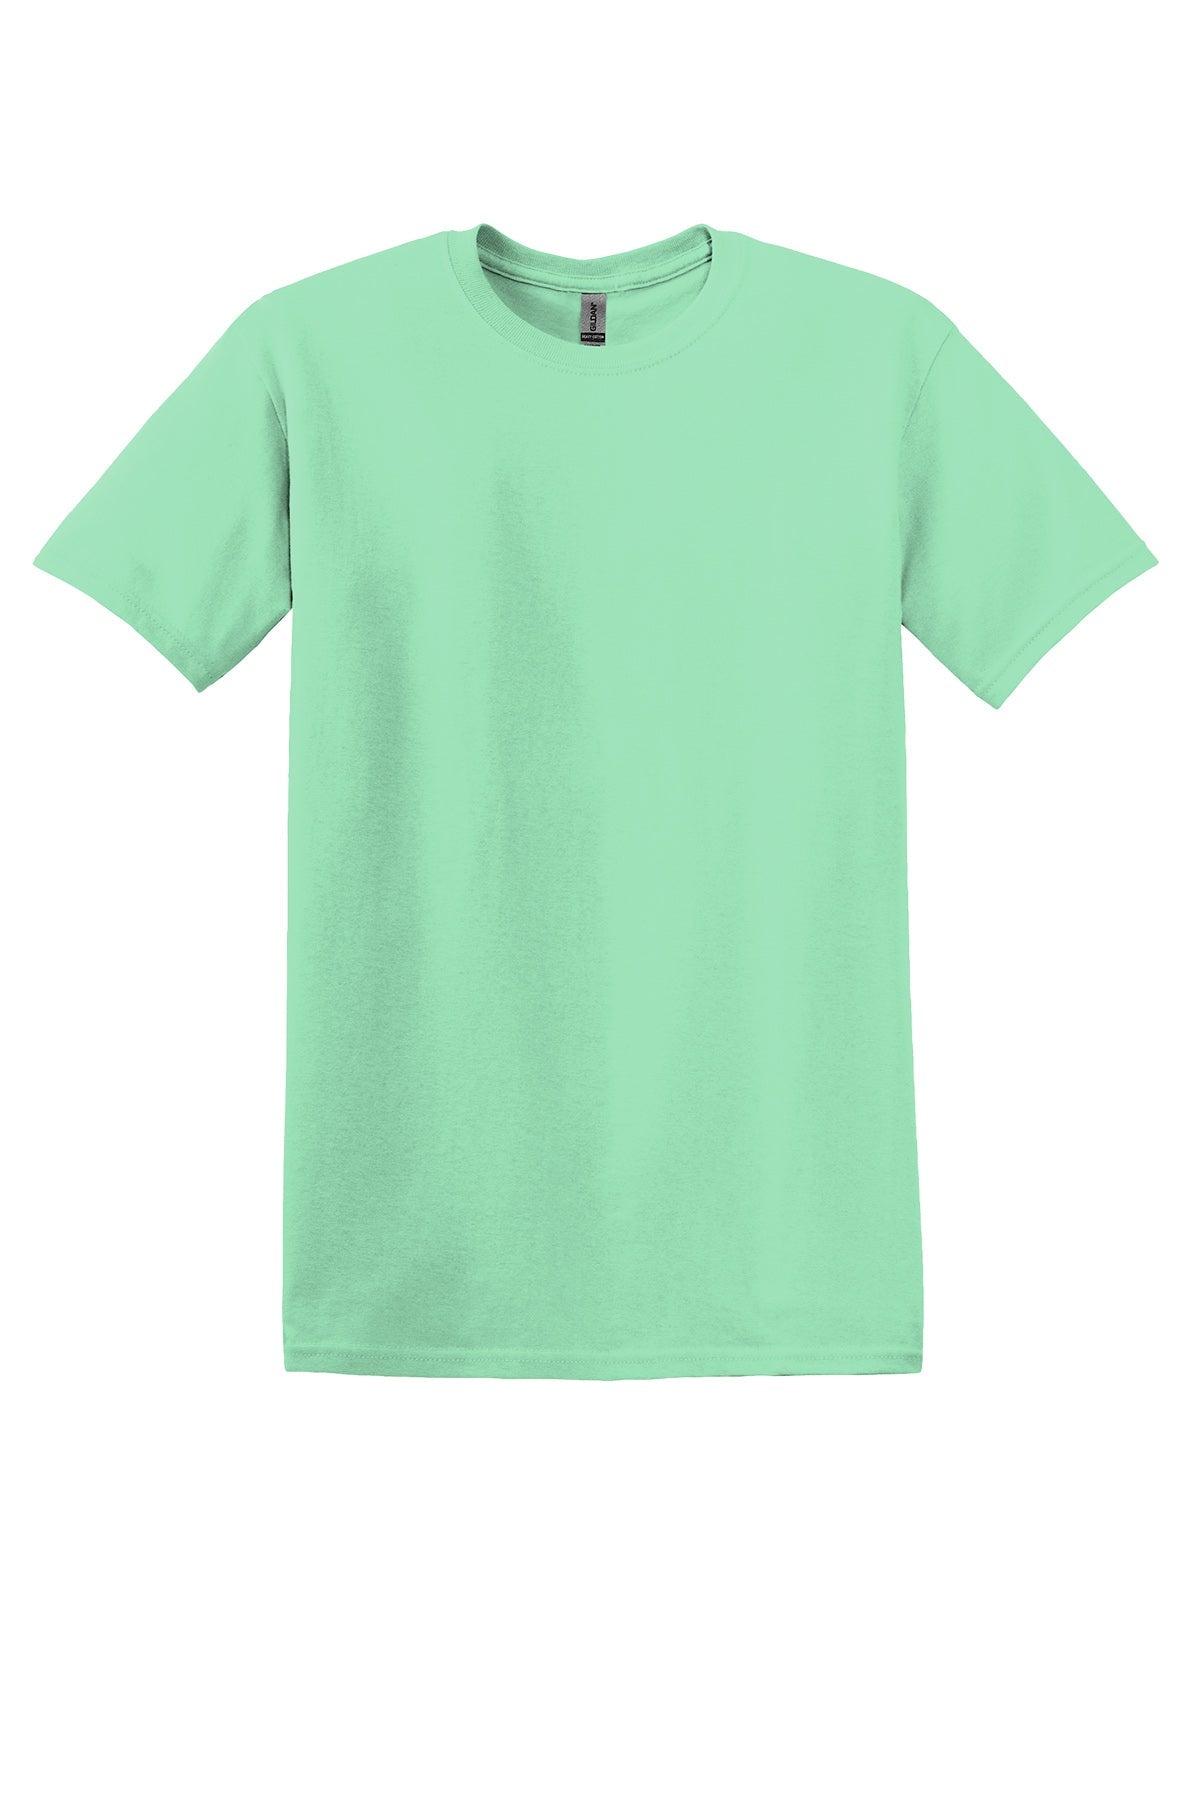 Gildan 5000B Youth T-Shirt Yth X-Small / Mint Green